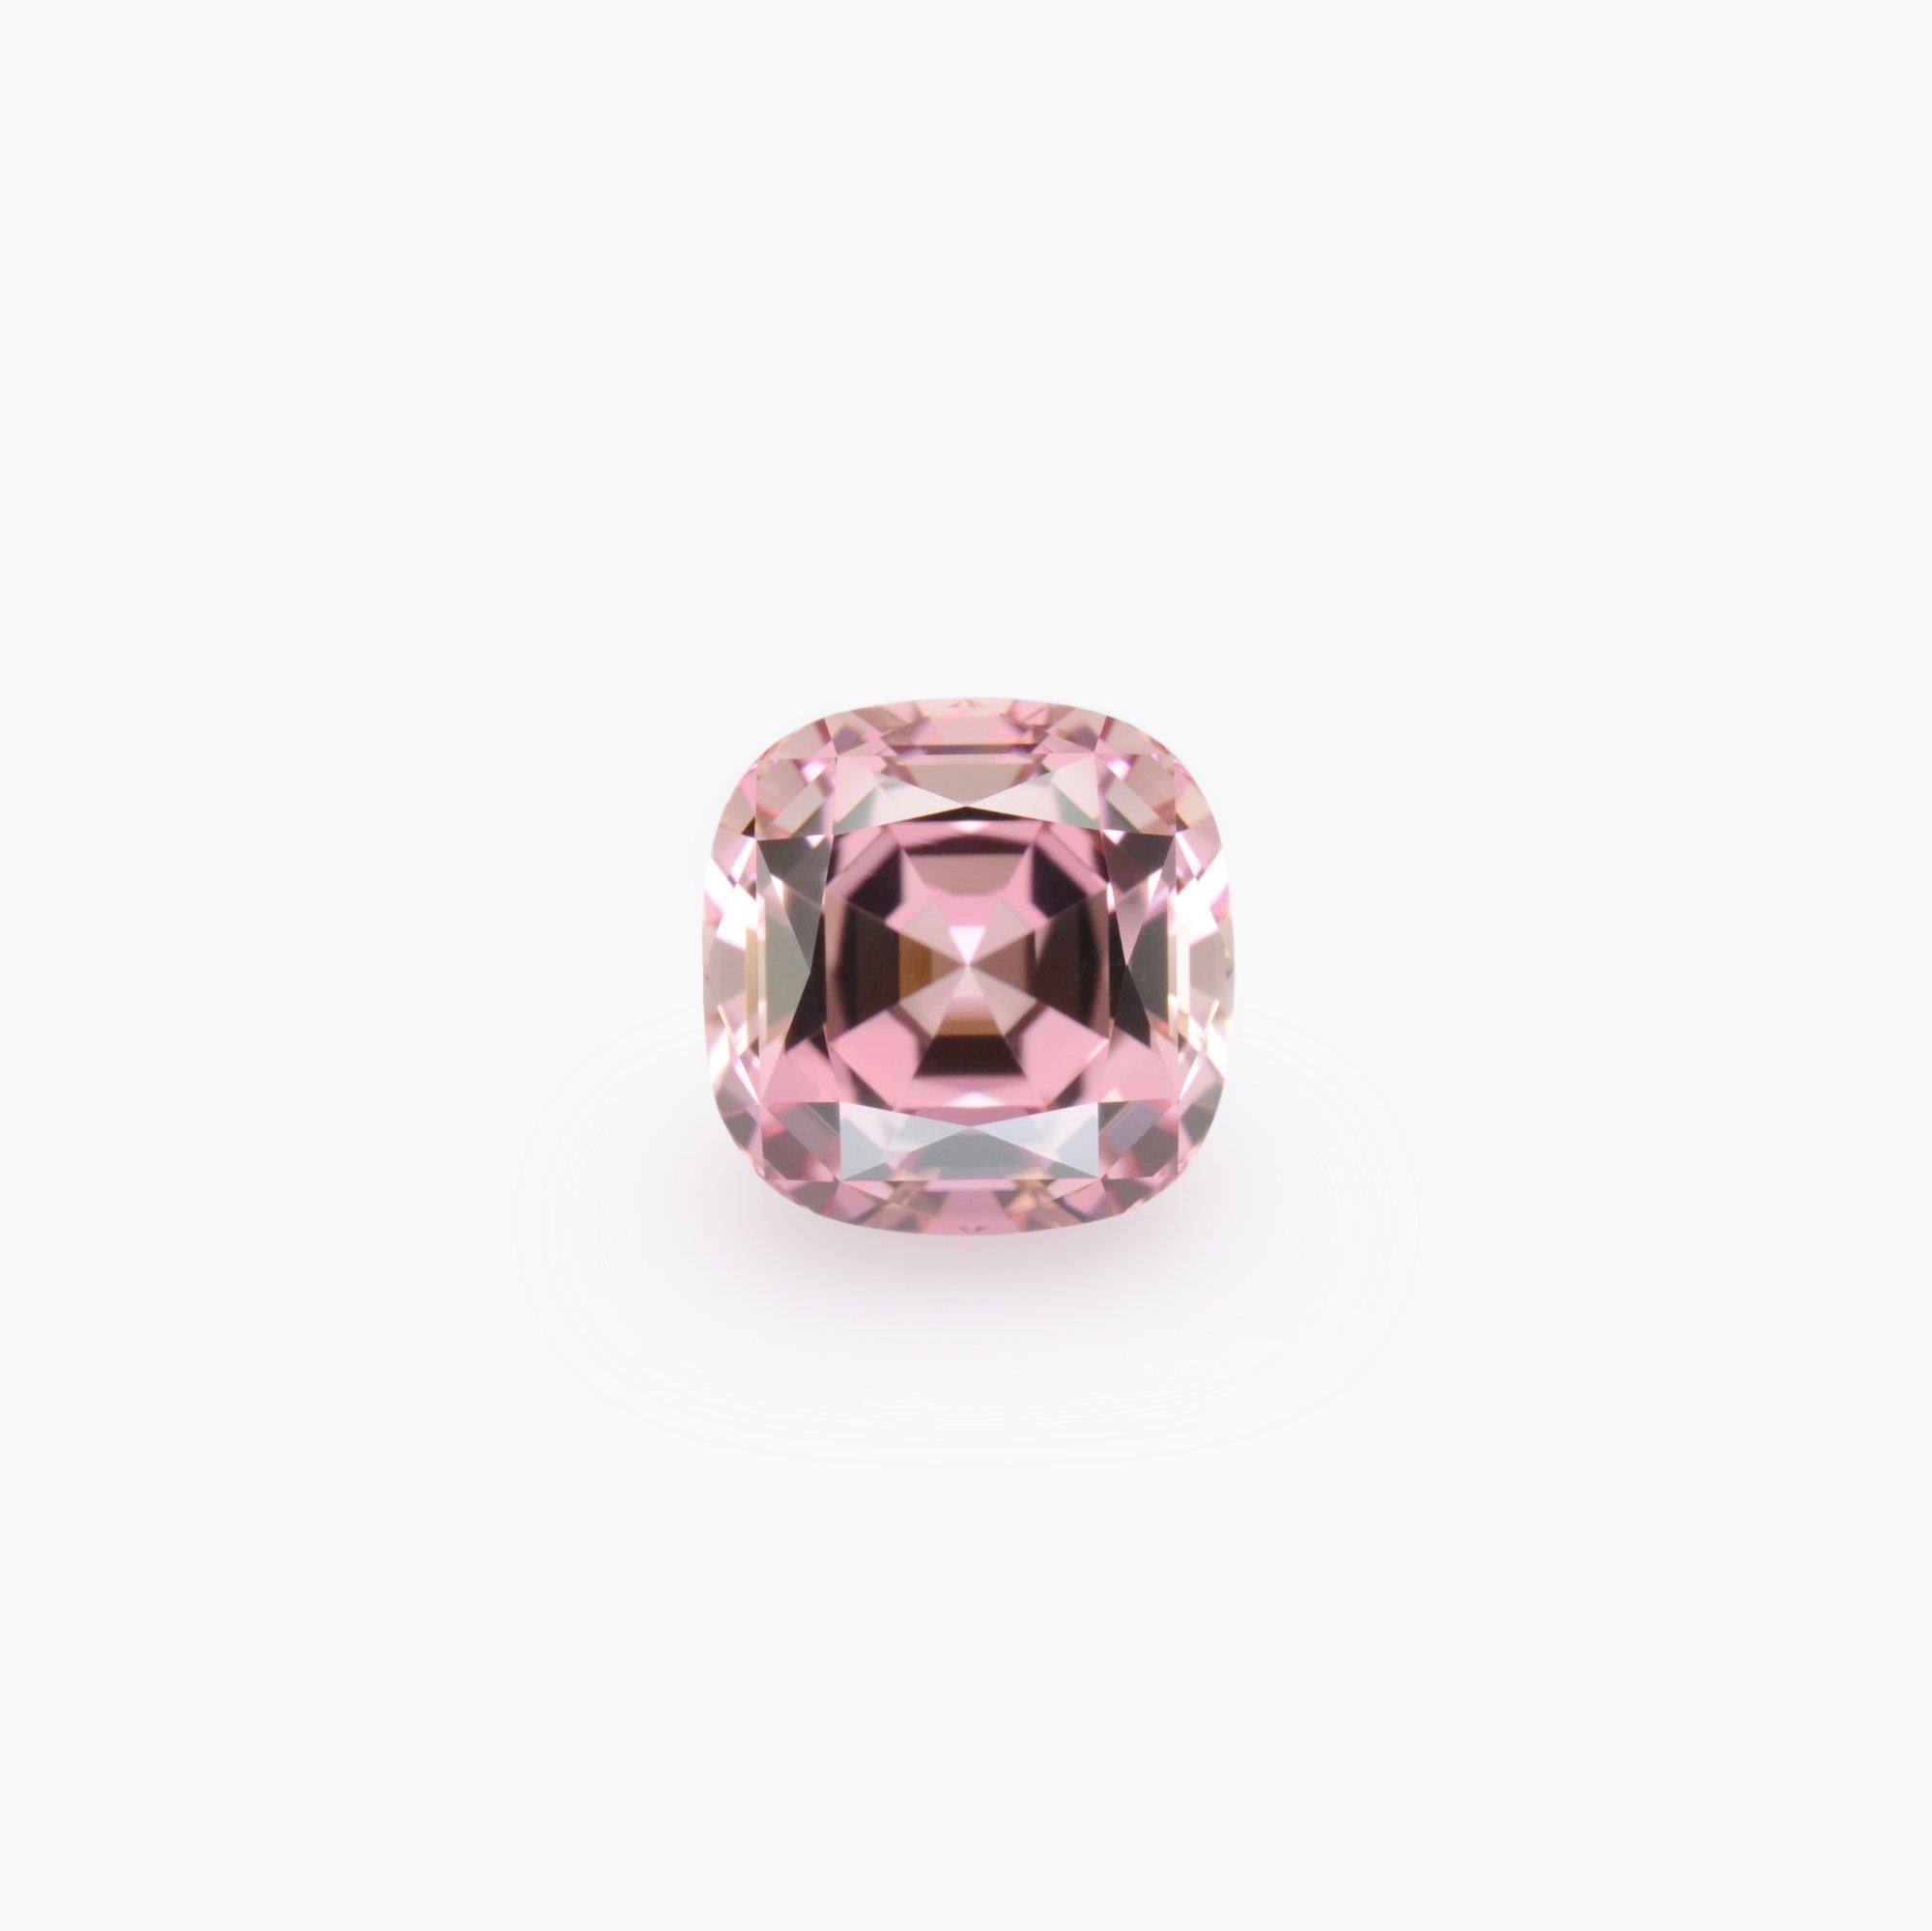 Modern Pink Tourmaline Ring Gem 7.82 Carat Unset Loose Gemstone